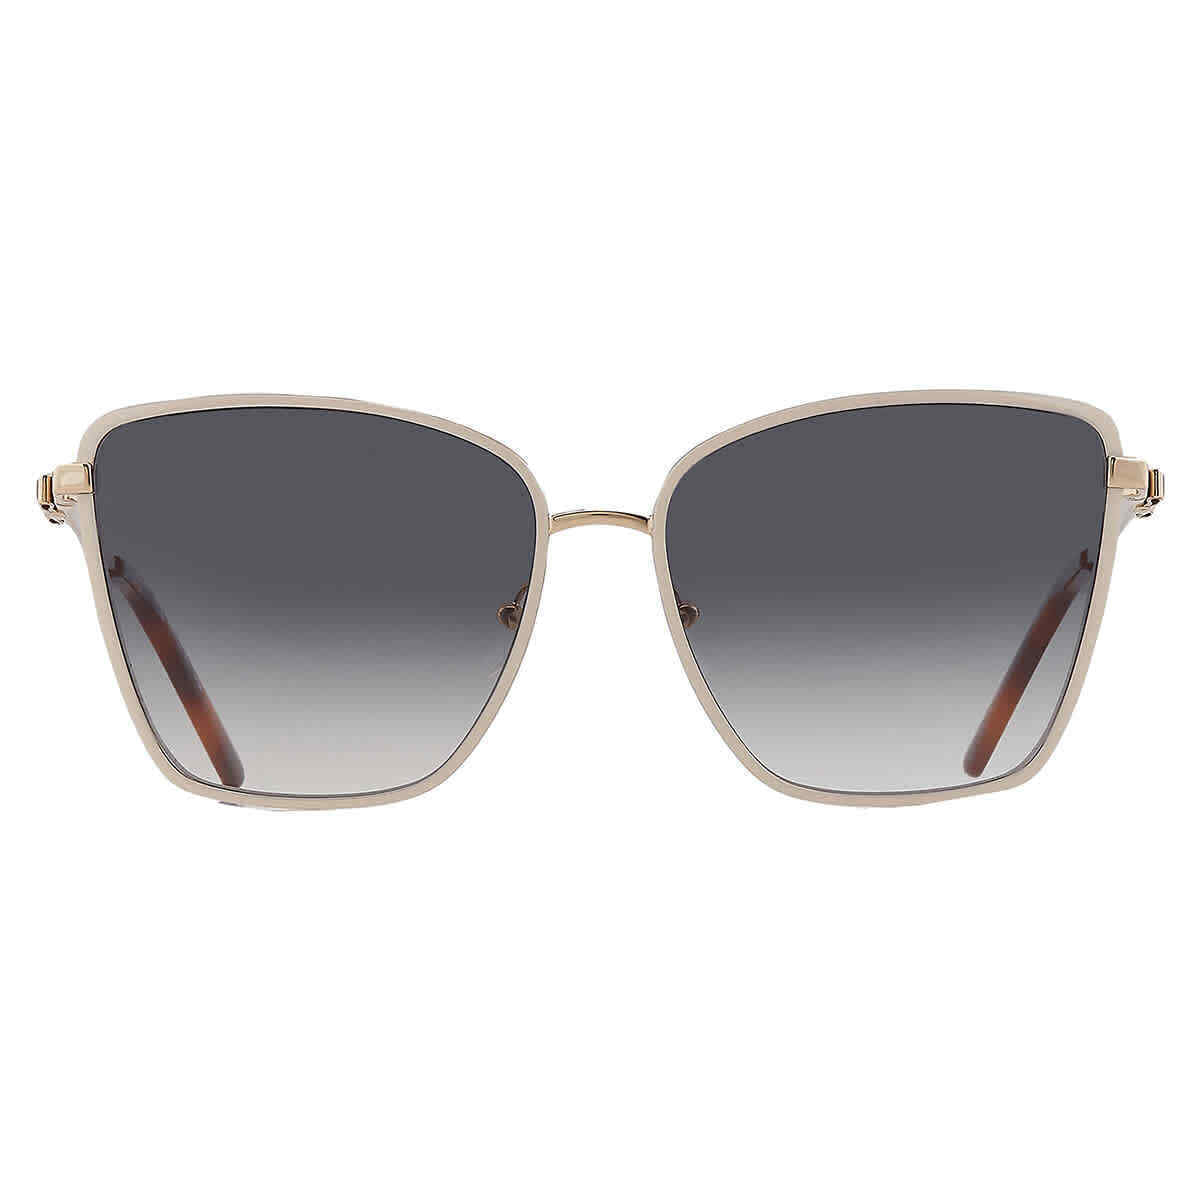 Salvatore Ferragamo SF279S-721 59mm New Sunglasses